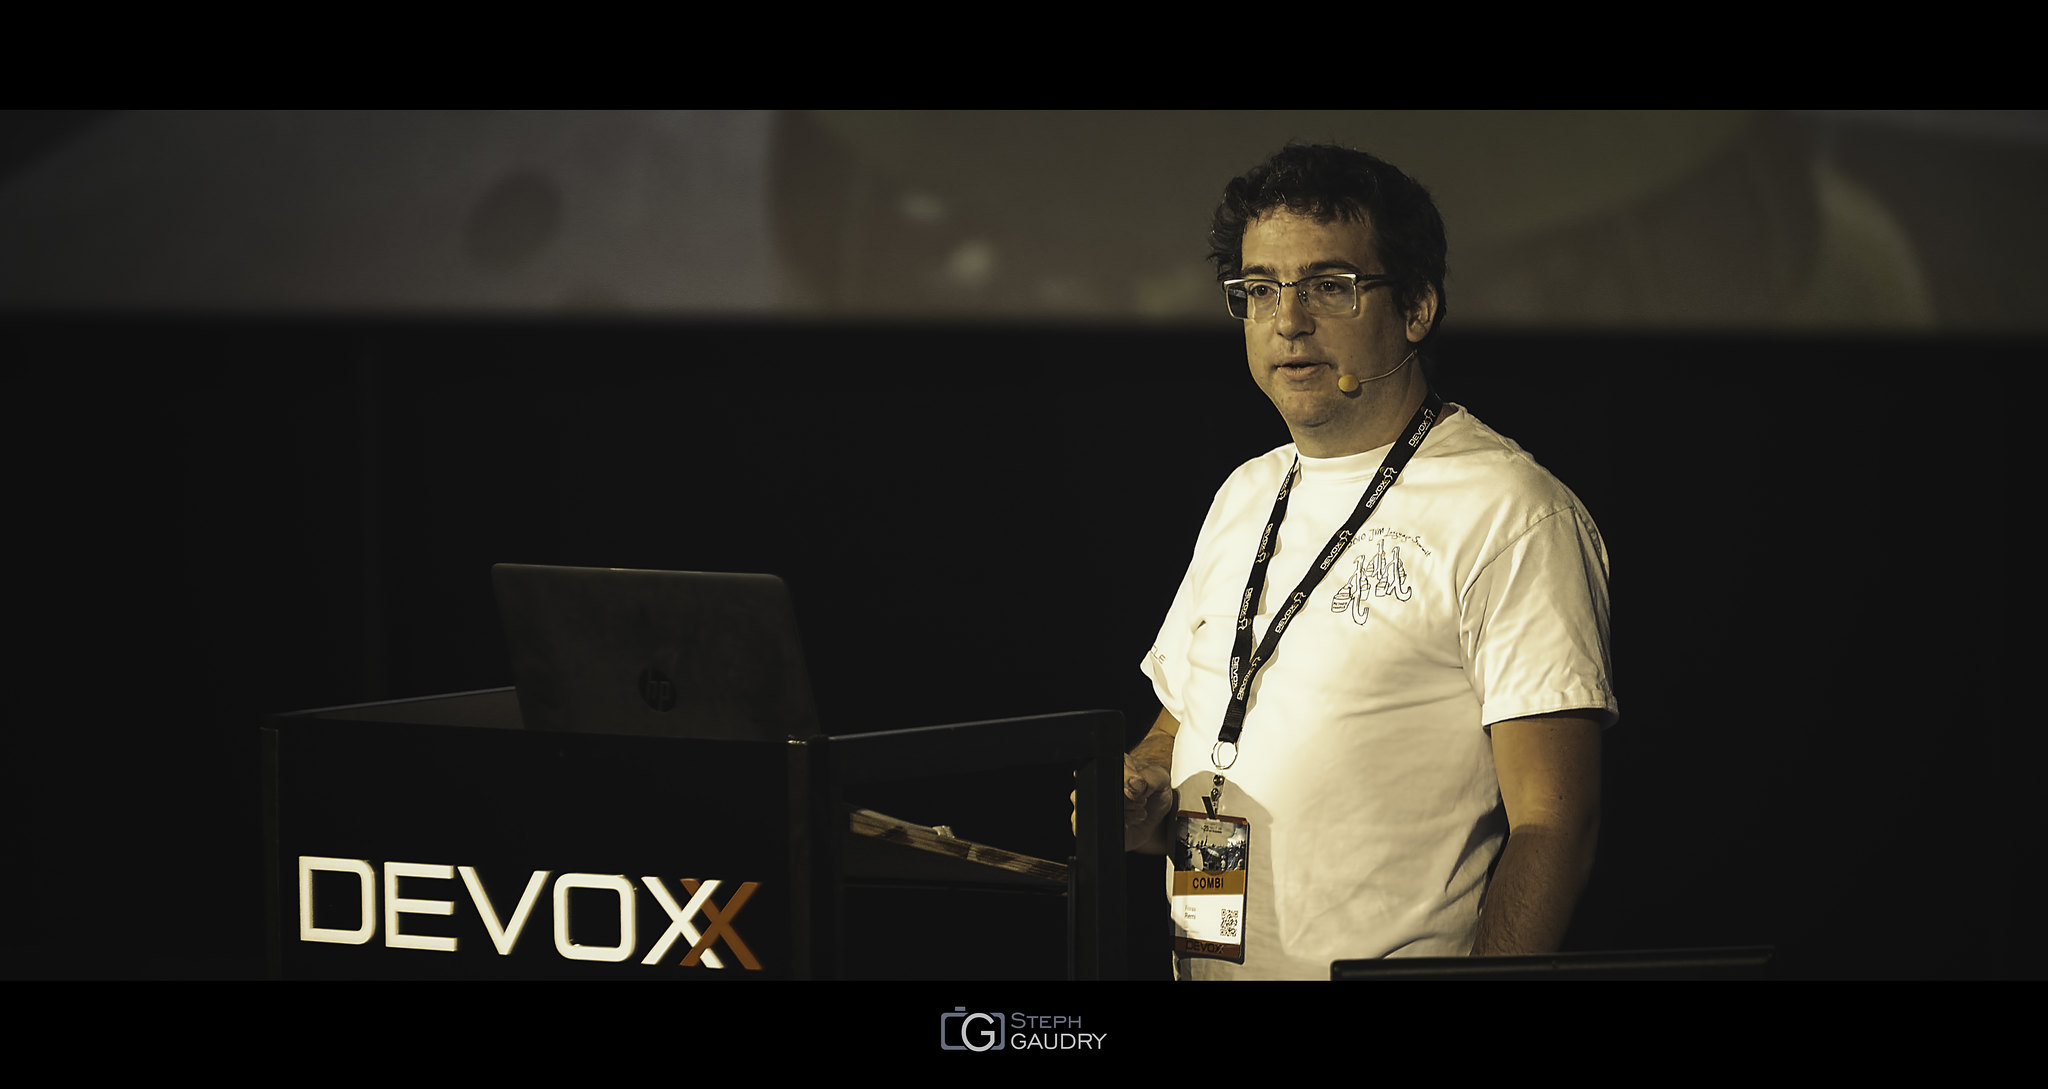 Remi Forax @ Devoxx2015 - Design Pattern Reloaded [Klicken Sie hier, um die Diashow zu starten]